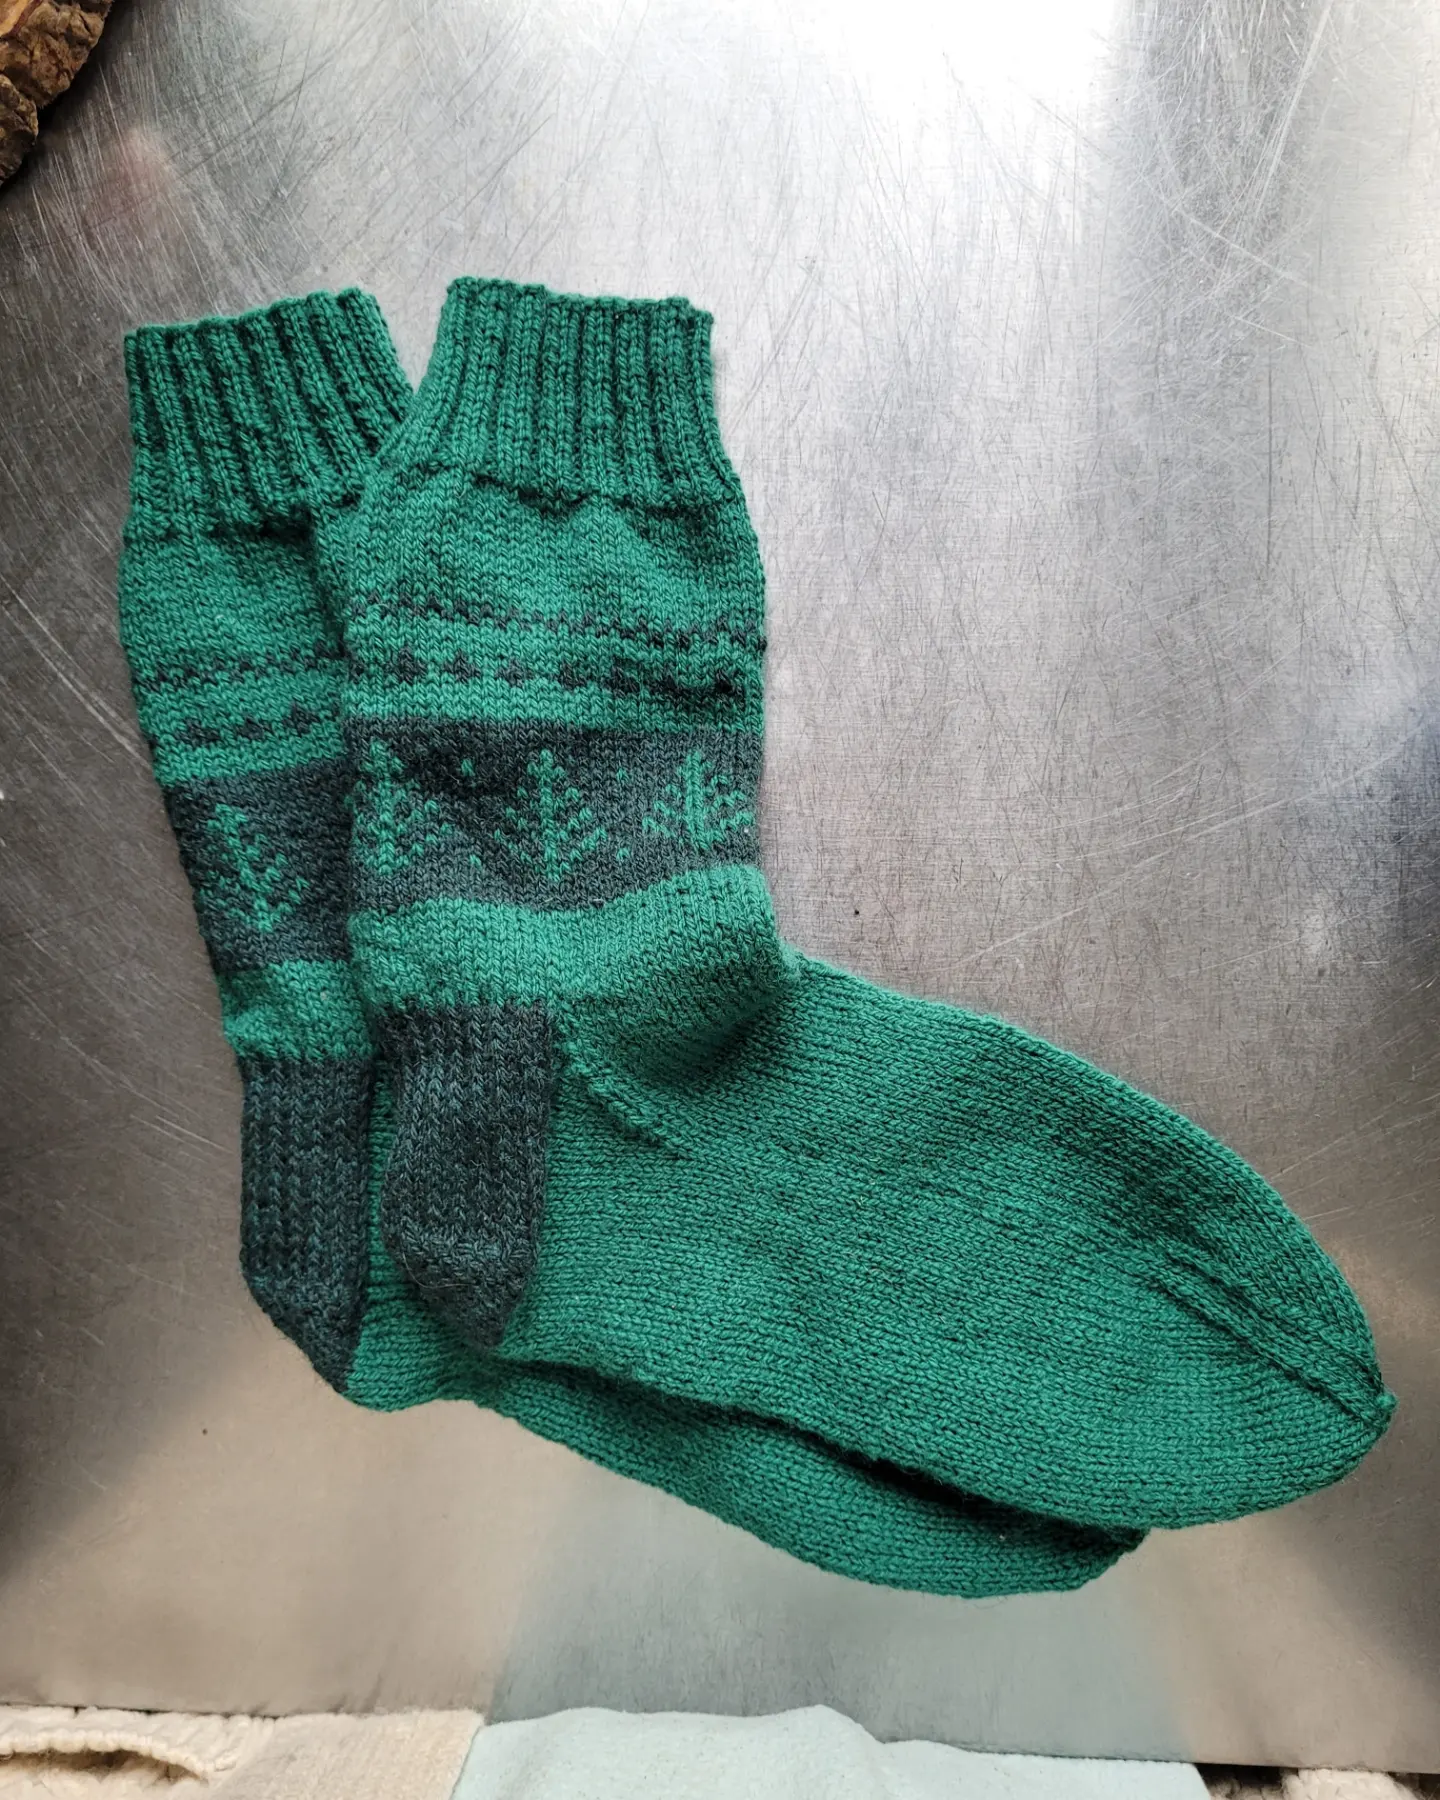 Socks for Stephen